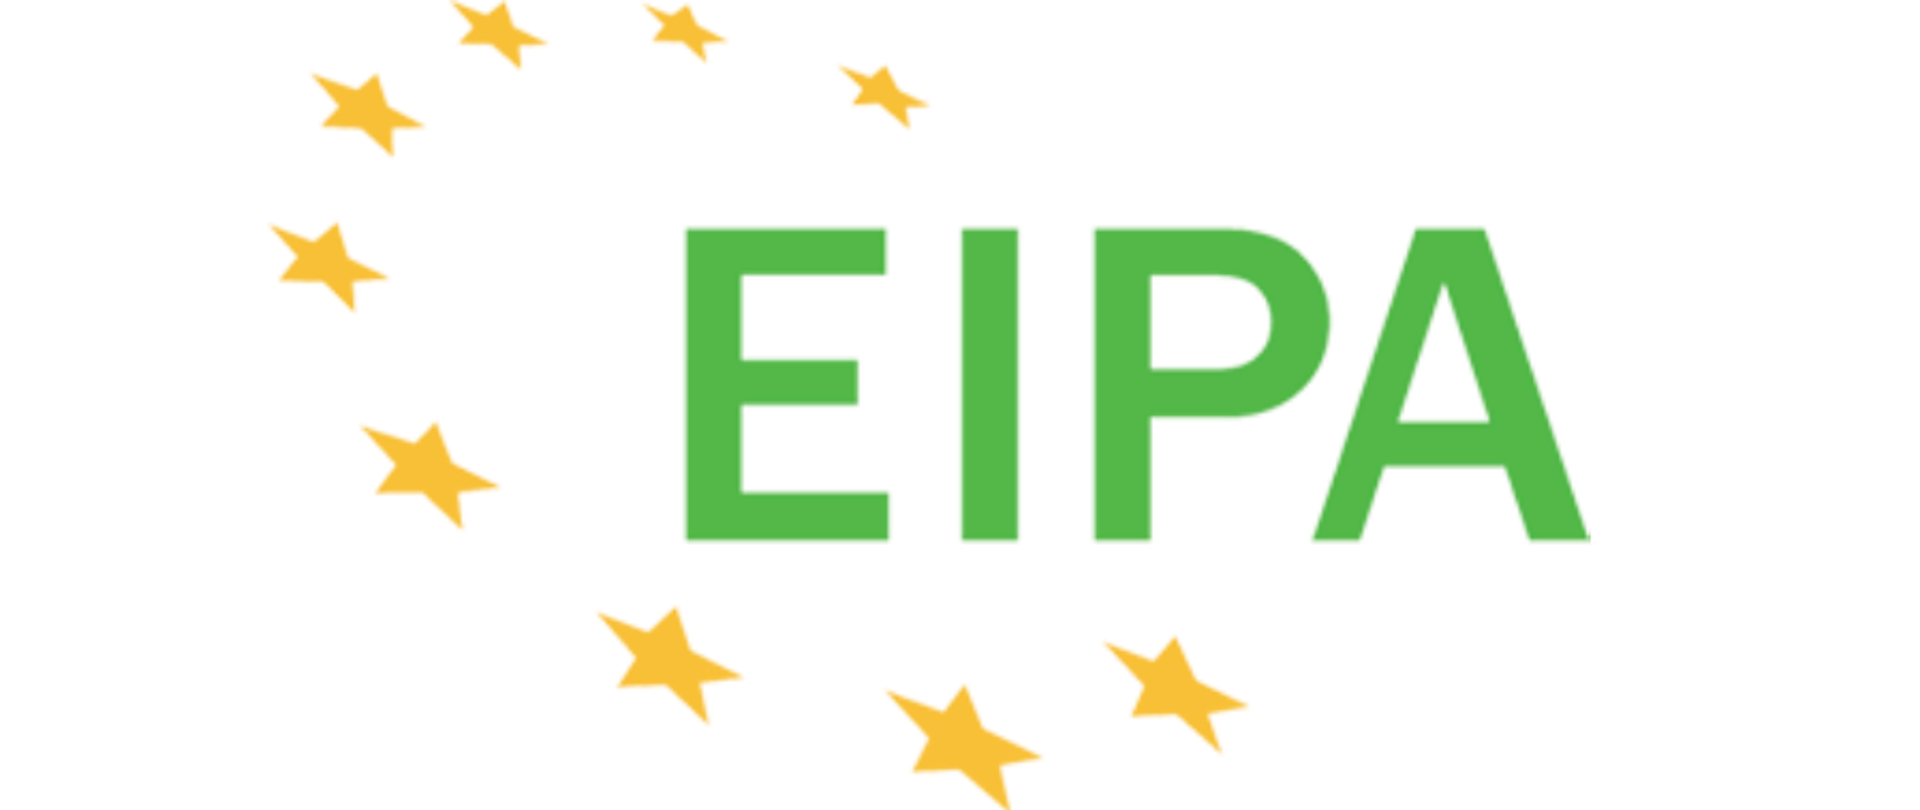 Logotyp EIPA. Pośrodku, zielonymi literami, skrót EIPA, od lewej strony wpisuje się on w okrąg z żółtych gwiazdek. EIPA to skrót od nazwy Europejski Instytut Administracji Publicznej - ang. European Institute of Public Administration.